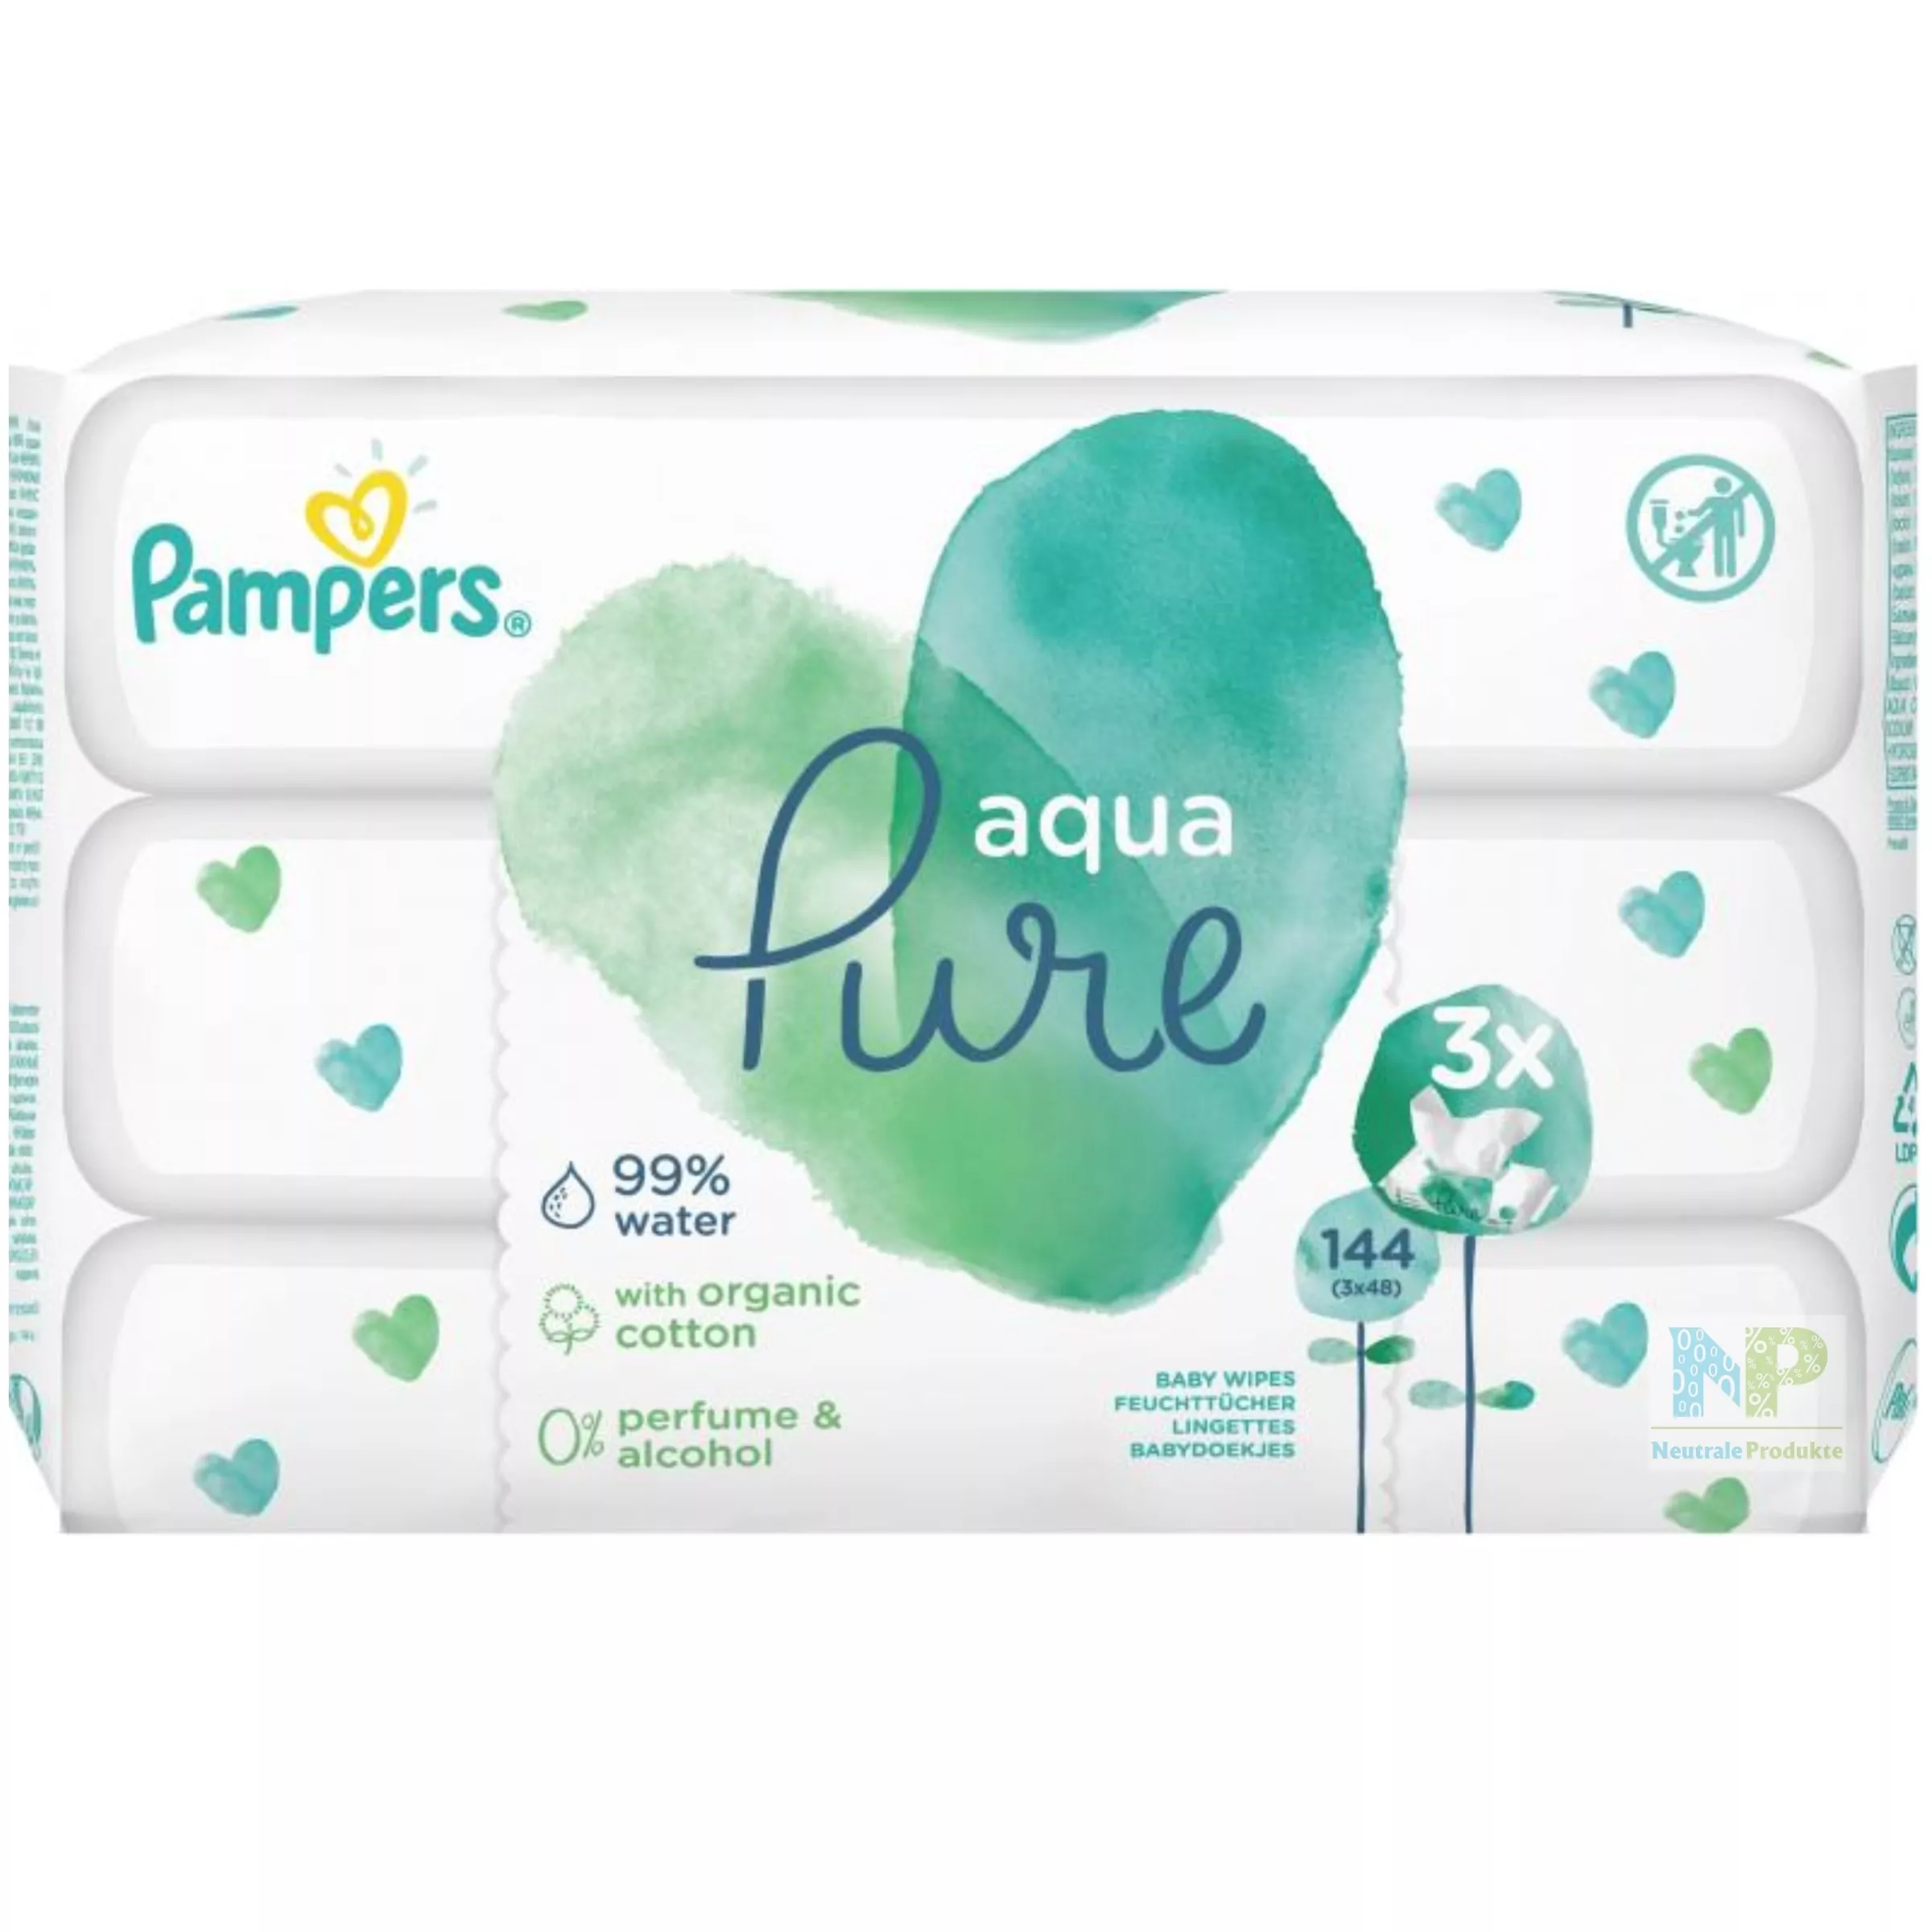 Pampers Aqua Pure Baby Feuchttücher Reinigung 18 x 48 Stück 0,06 €/Feuchtuch 